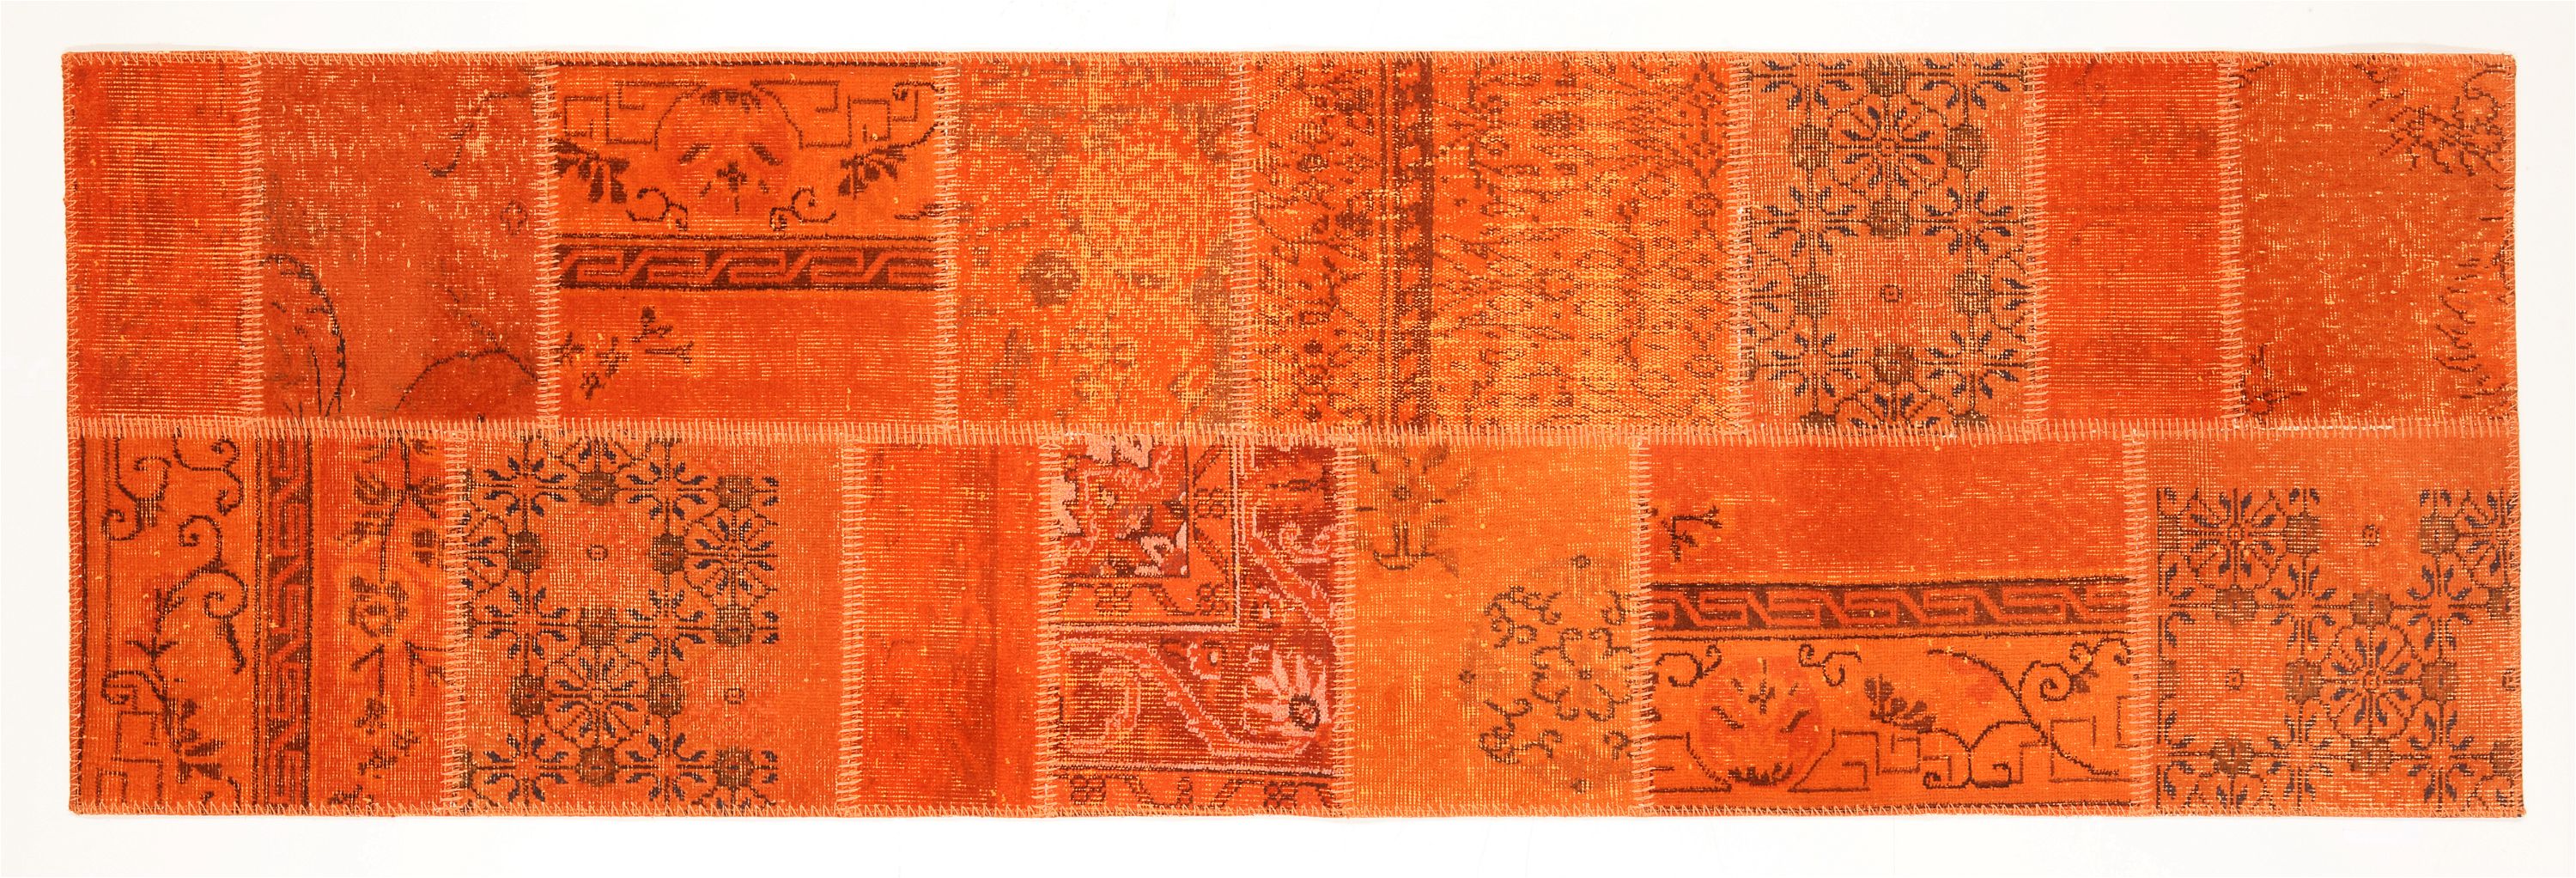 Sallys Traditionelle Patchwork Hali Teppiche